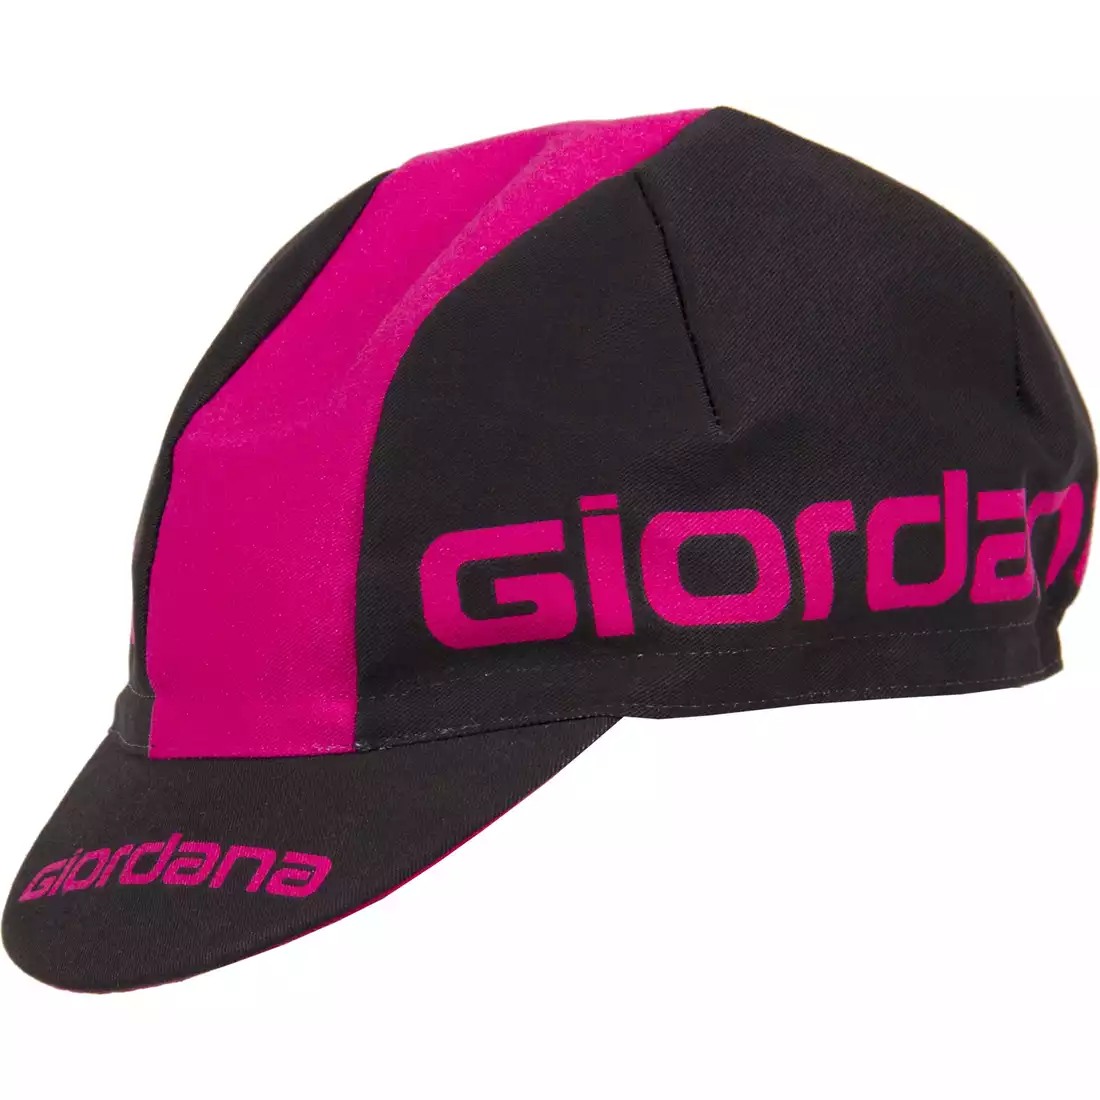 GIORDANA SS18 czapeczka kolarska - Giordana Logo - Black/Pink GI-S5-COCA-GIOR-BKPK one size